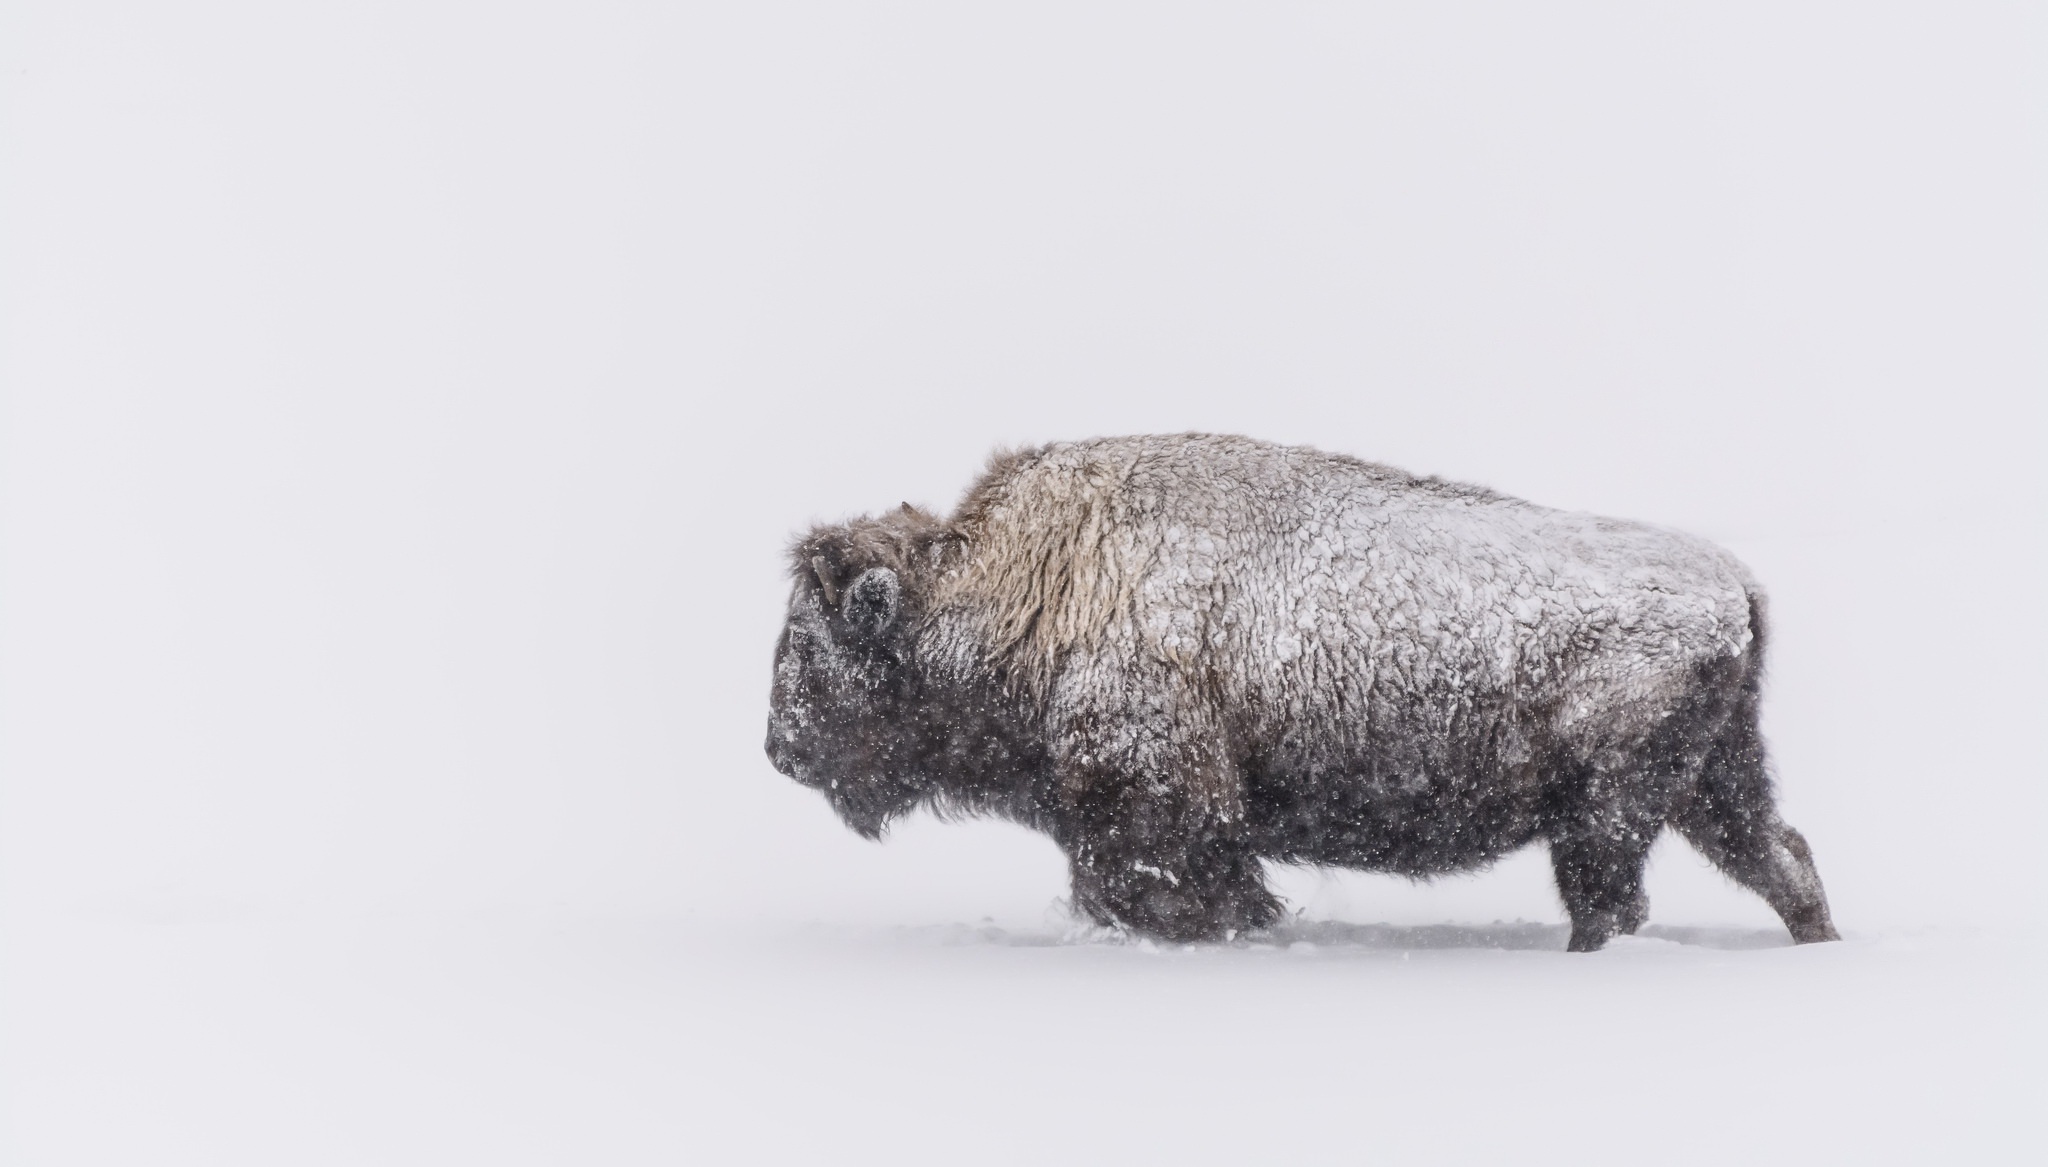 Скачать обои бесплатно Животные, Снег, Снегопад, Американский Бизон картинка на рабочий стол ПК